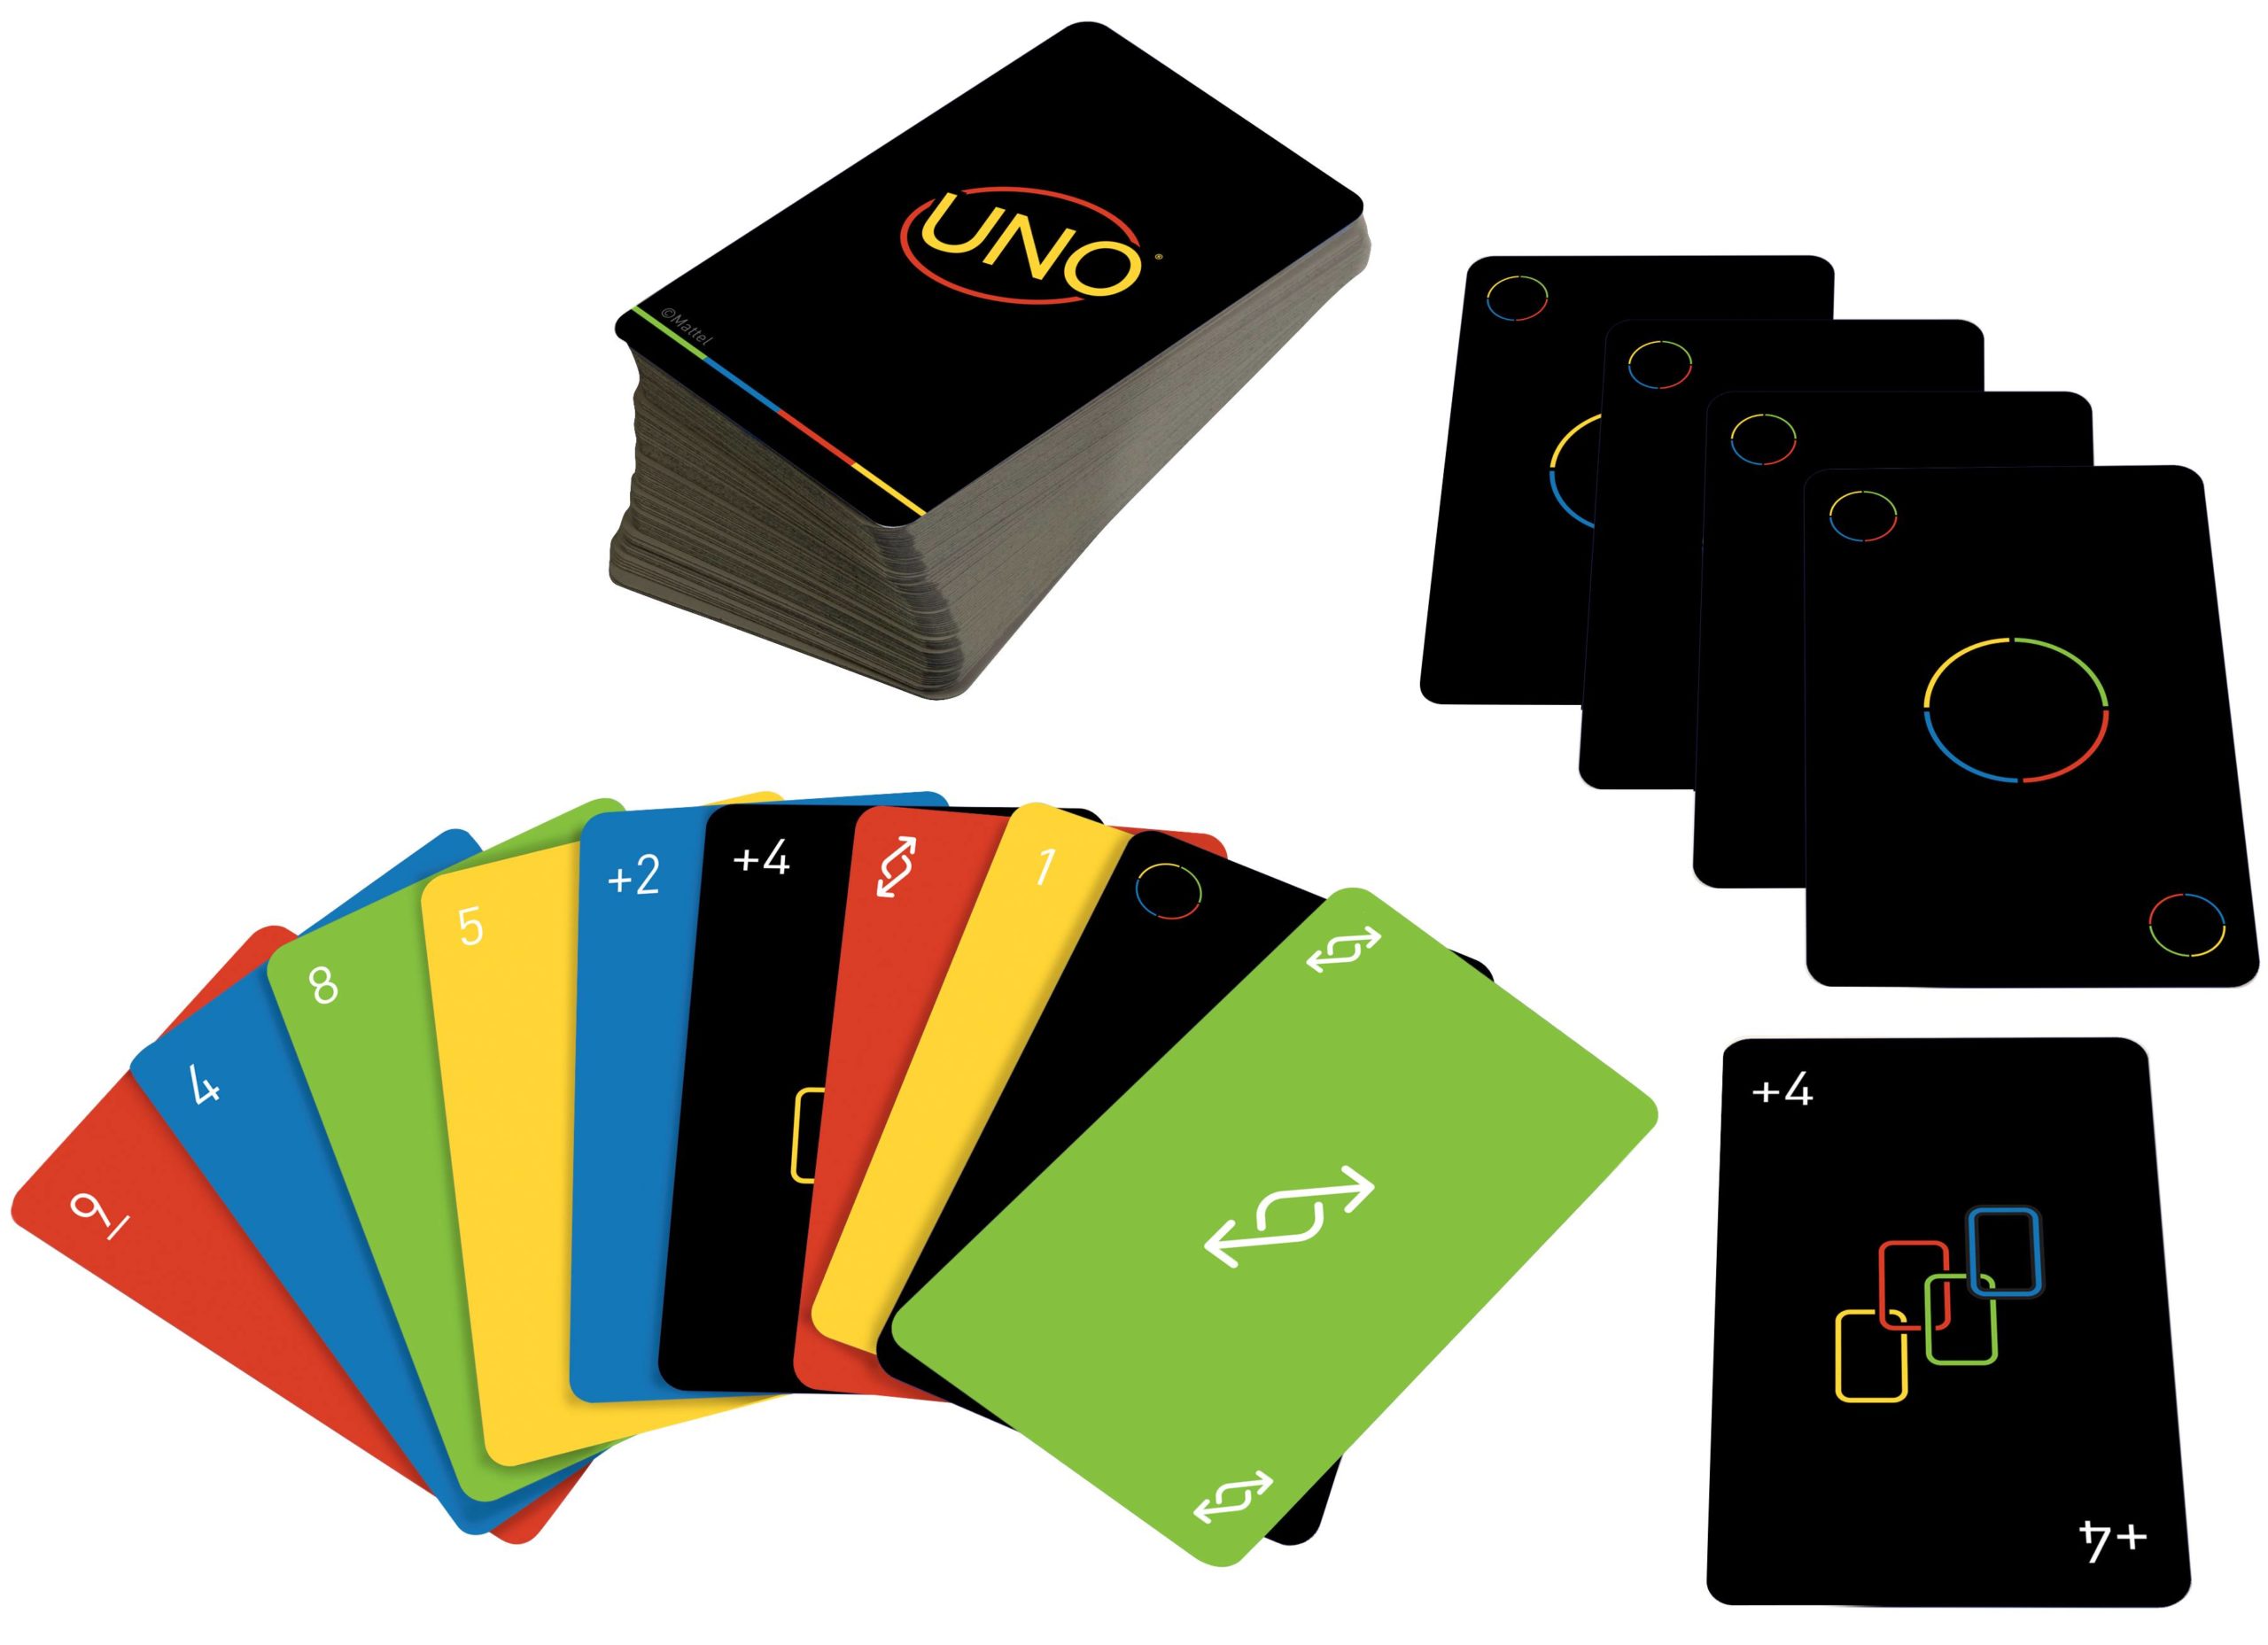 Designer brasileiro conta como surgiu a ideia de fazer um design  minimalista para o jogo Uno - Giz Brasil